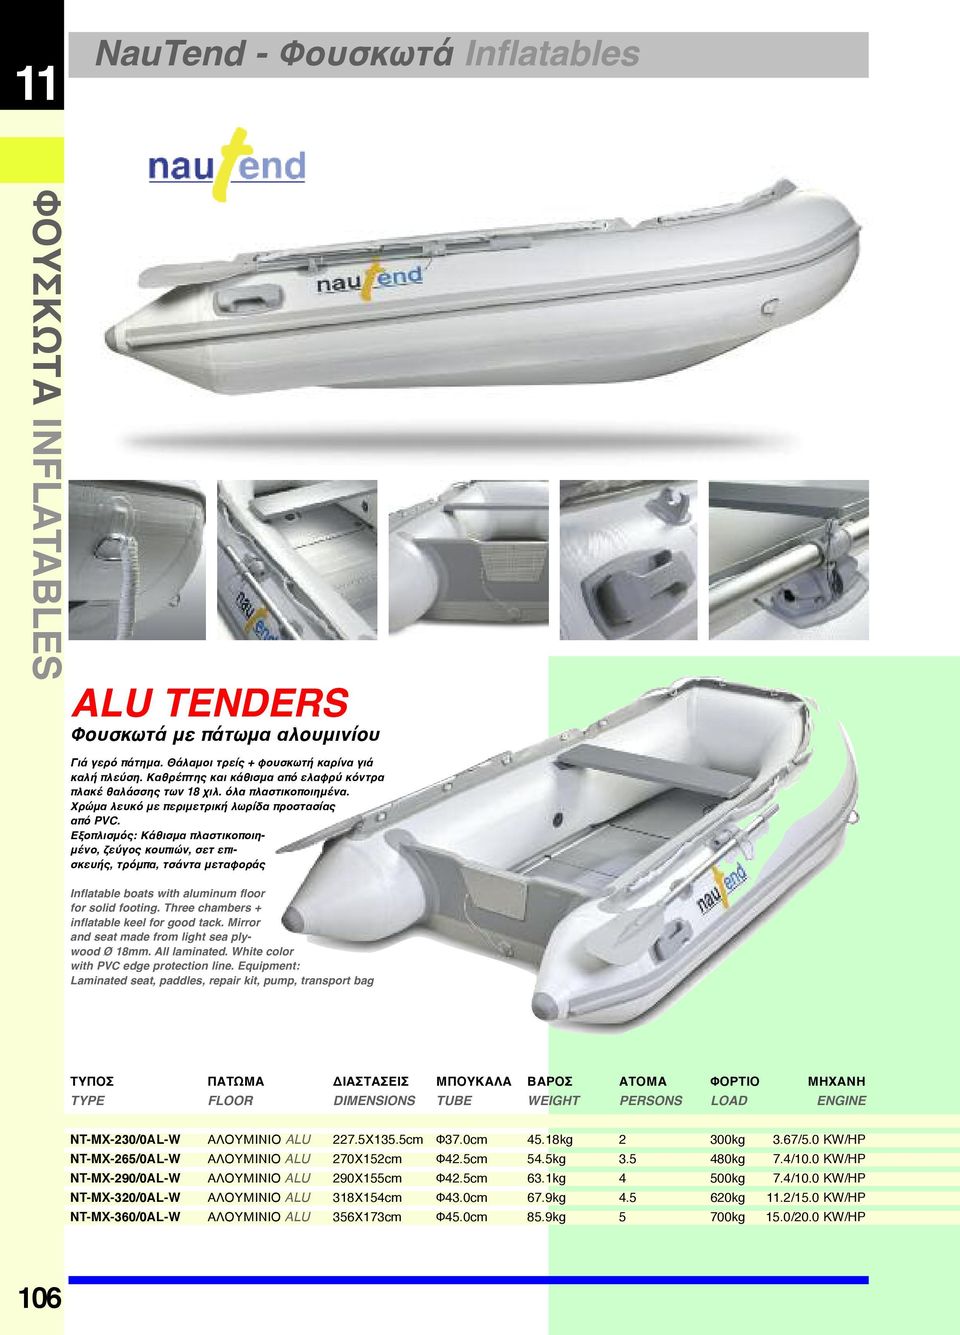 Εξοπλισμός: Κάθισμα πλαστικοποιημένο, ζεύγος κουπιών, σετ επισκευής, τρόμπα, τσάντα μεταφοράς Inflatable boats with aluminum floor for solid footing. Three chambers + inflatable keel for good tack.